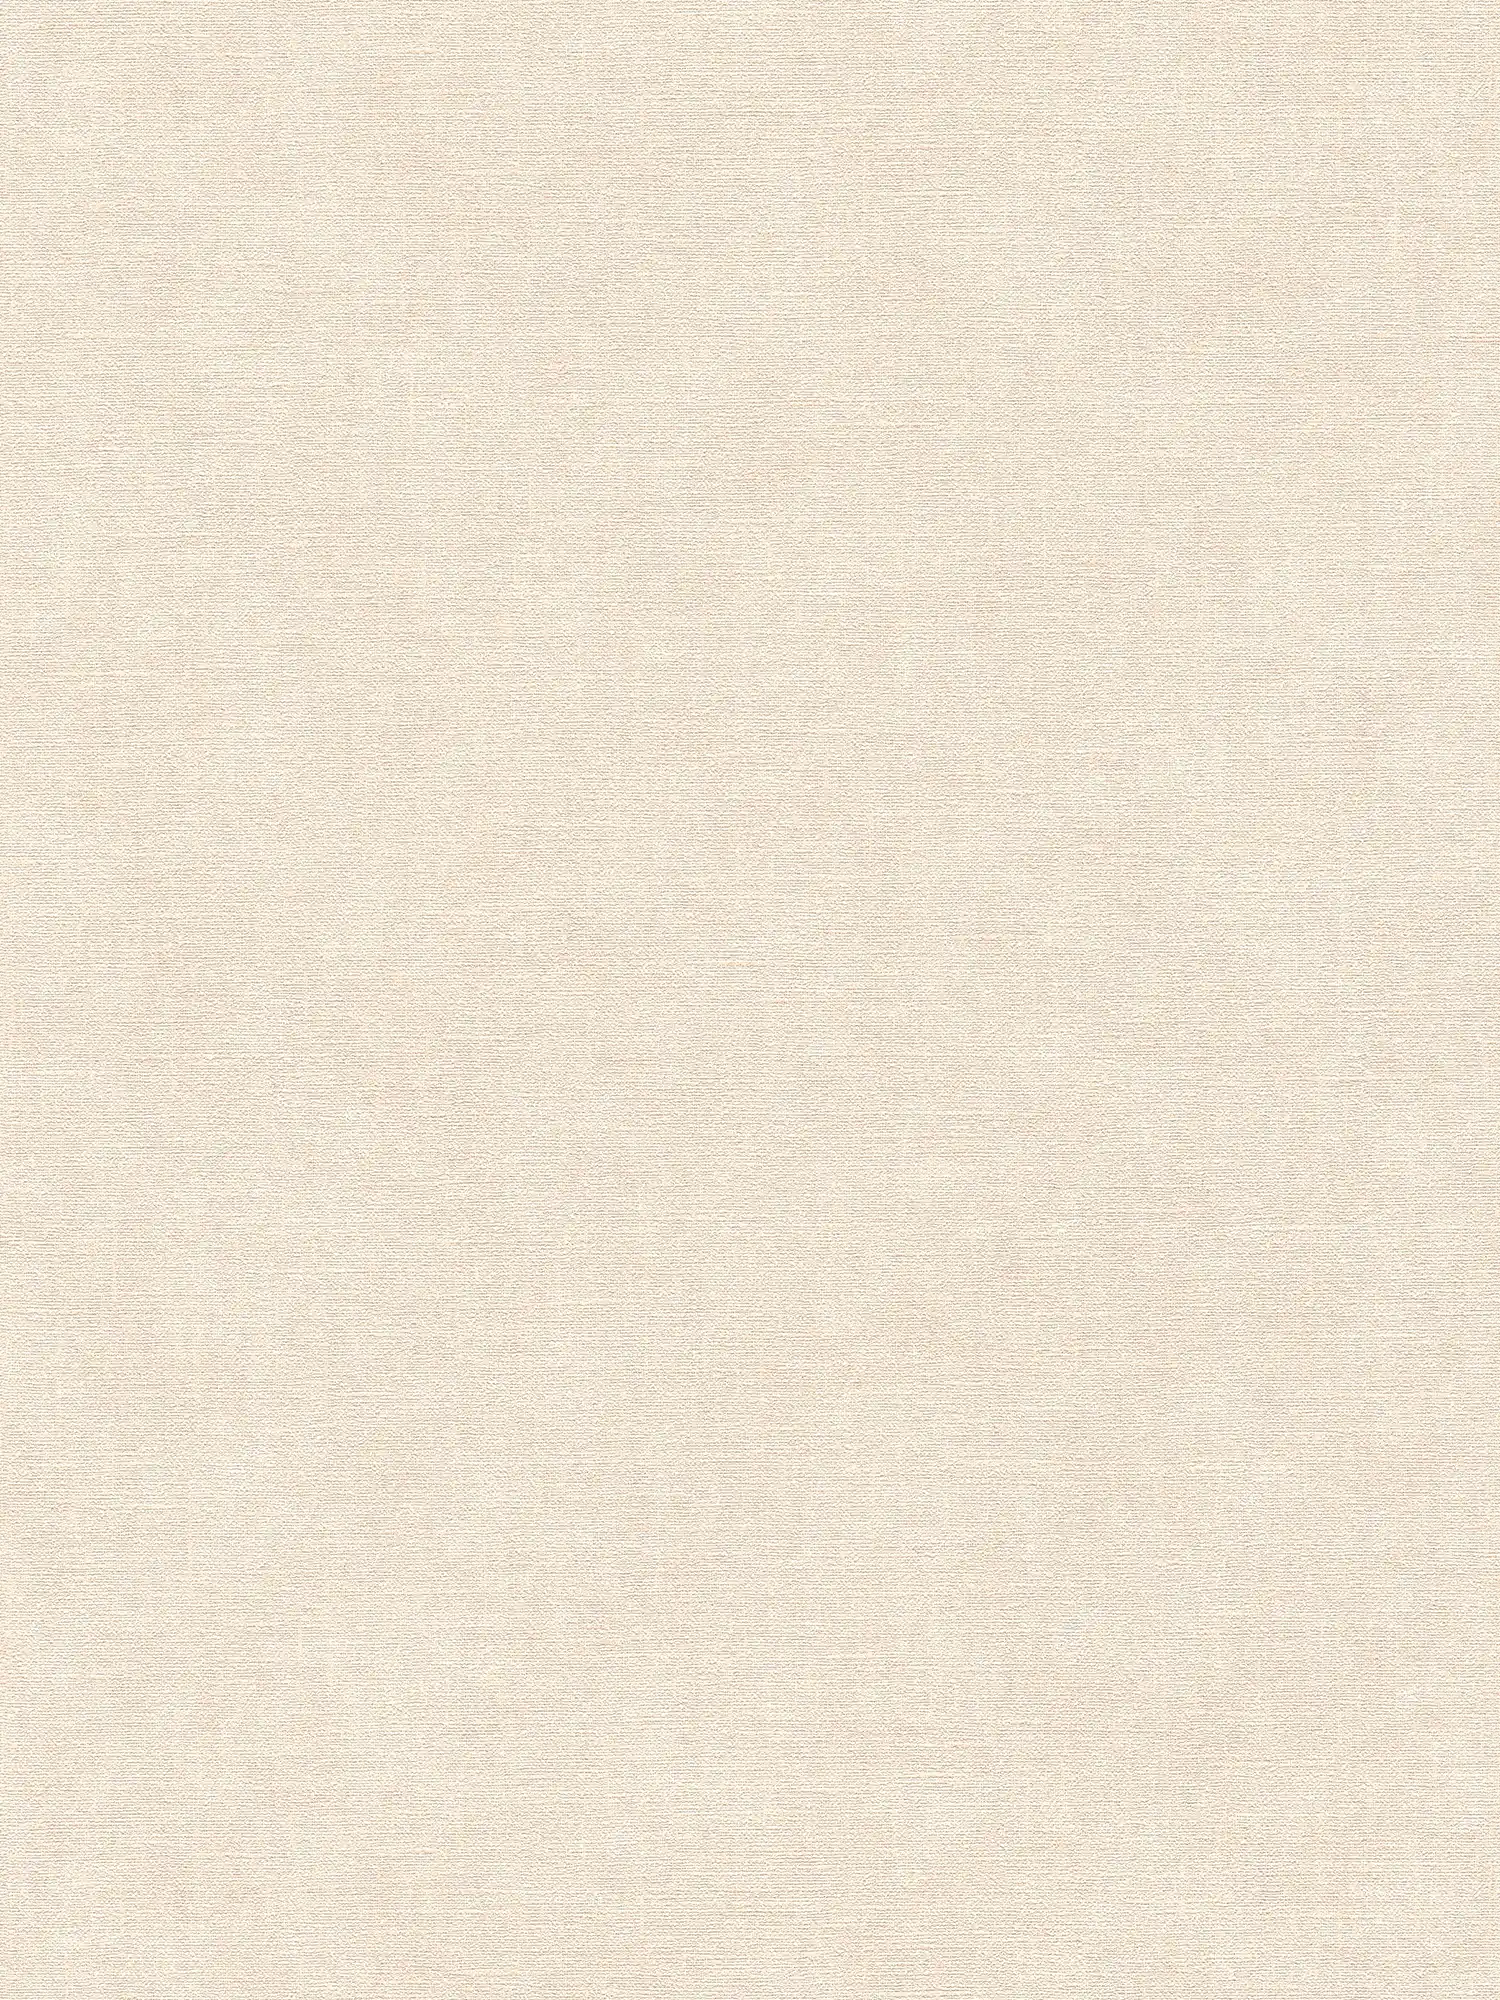 Papel pintado tejido-no tejido monocolor con aspecto de escayola y textura ligera - beige, crema
